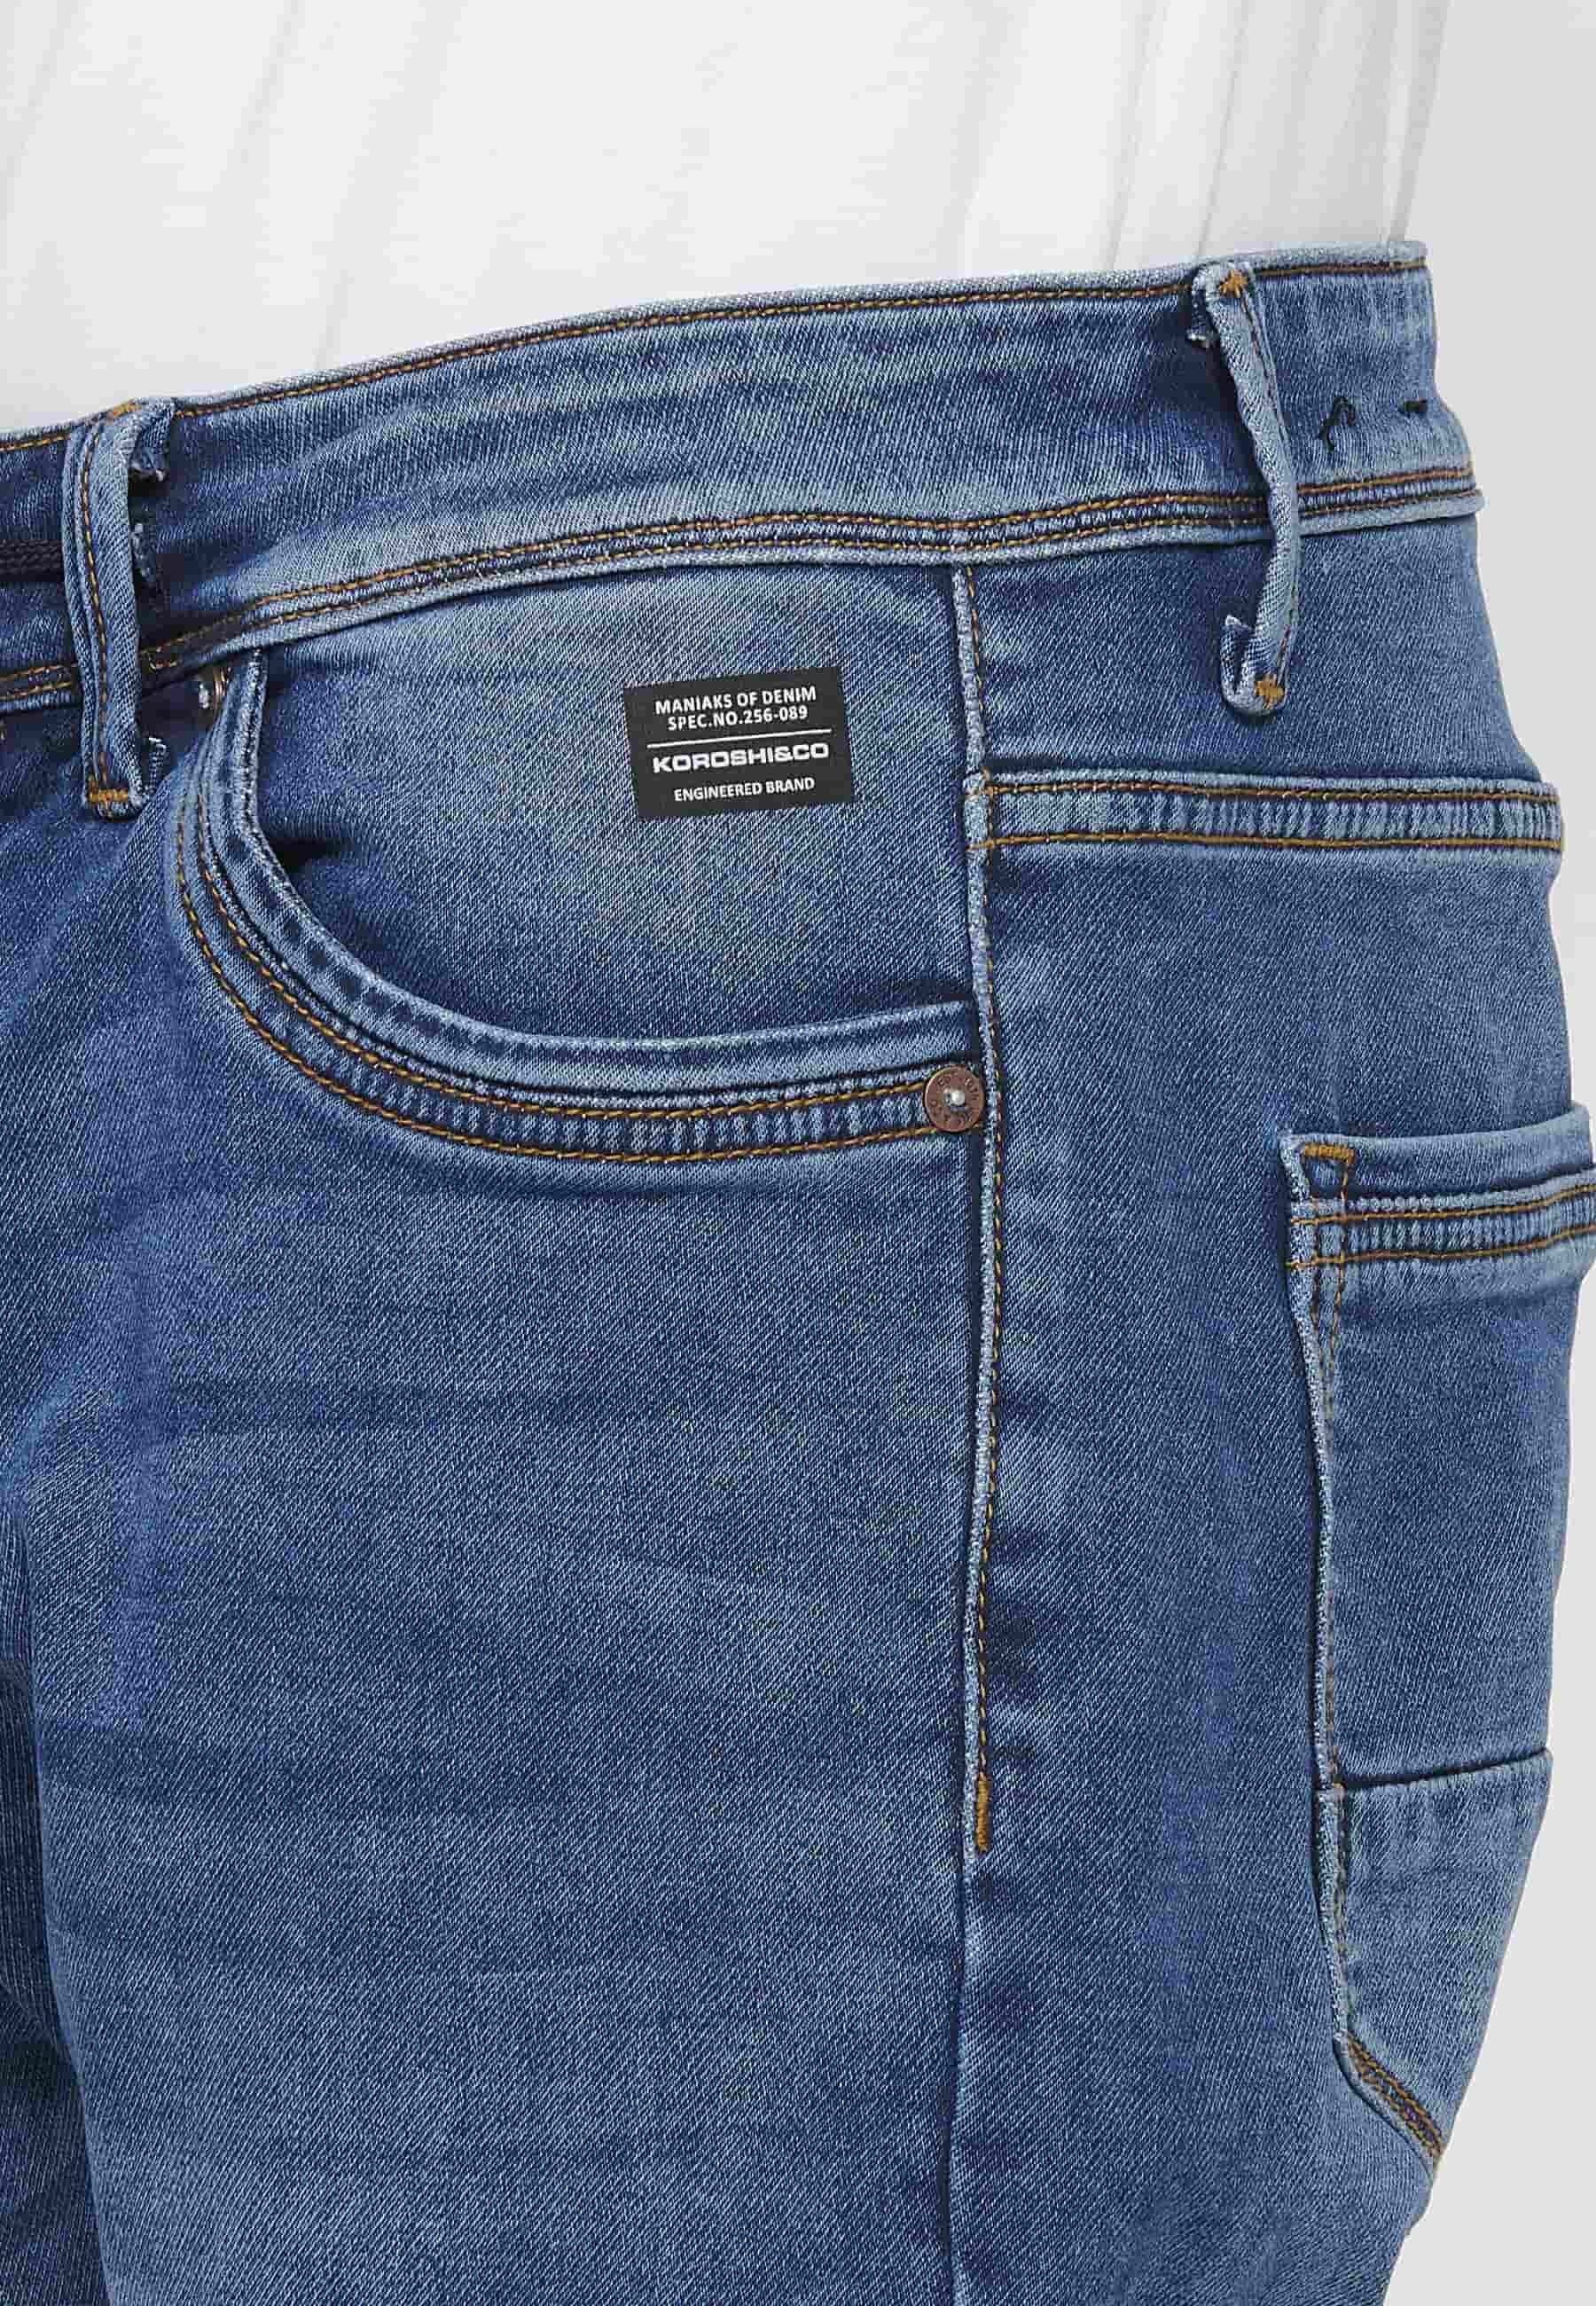 Pantalons llargs jeans llargs low rise slim fit amb Tancament davanter amb cremallera i botó de Color Blau per a Home 8